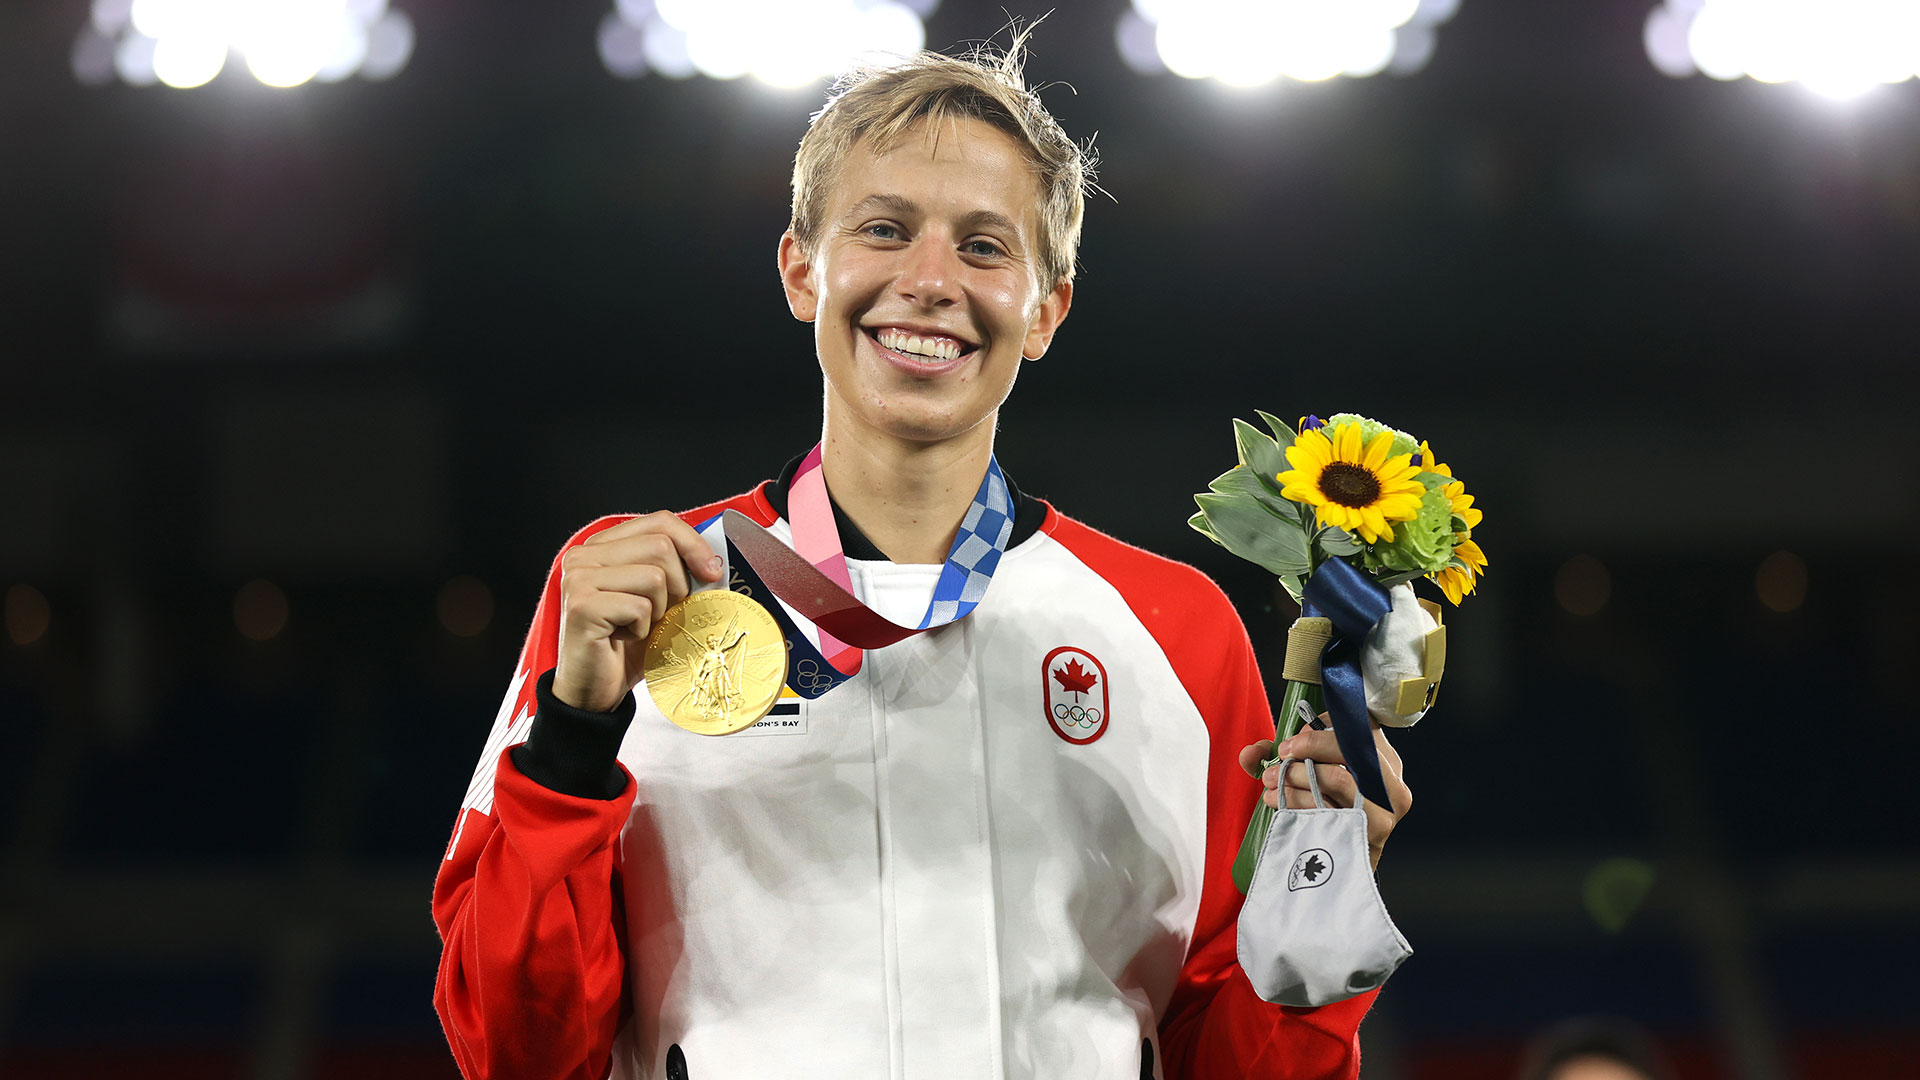 Quinn se convirtió en la primera persona trans no binaria en ganar una medalla olímpica. Getty Images)